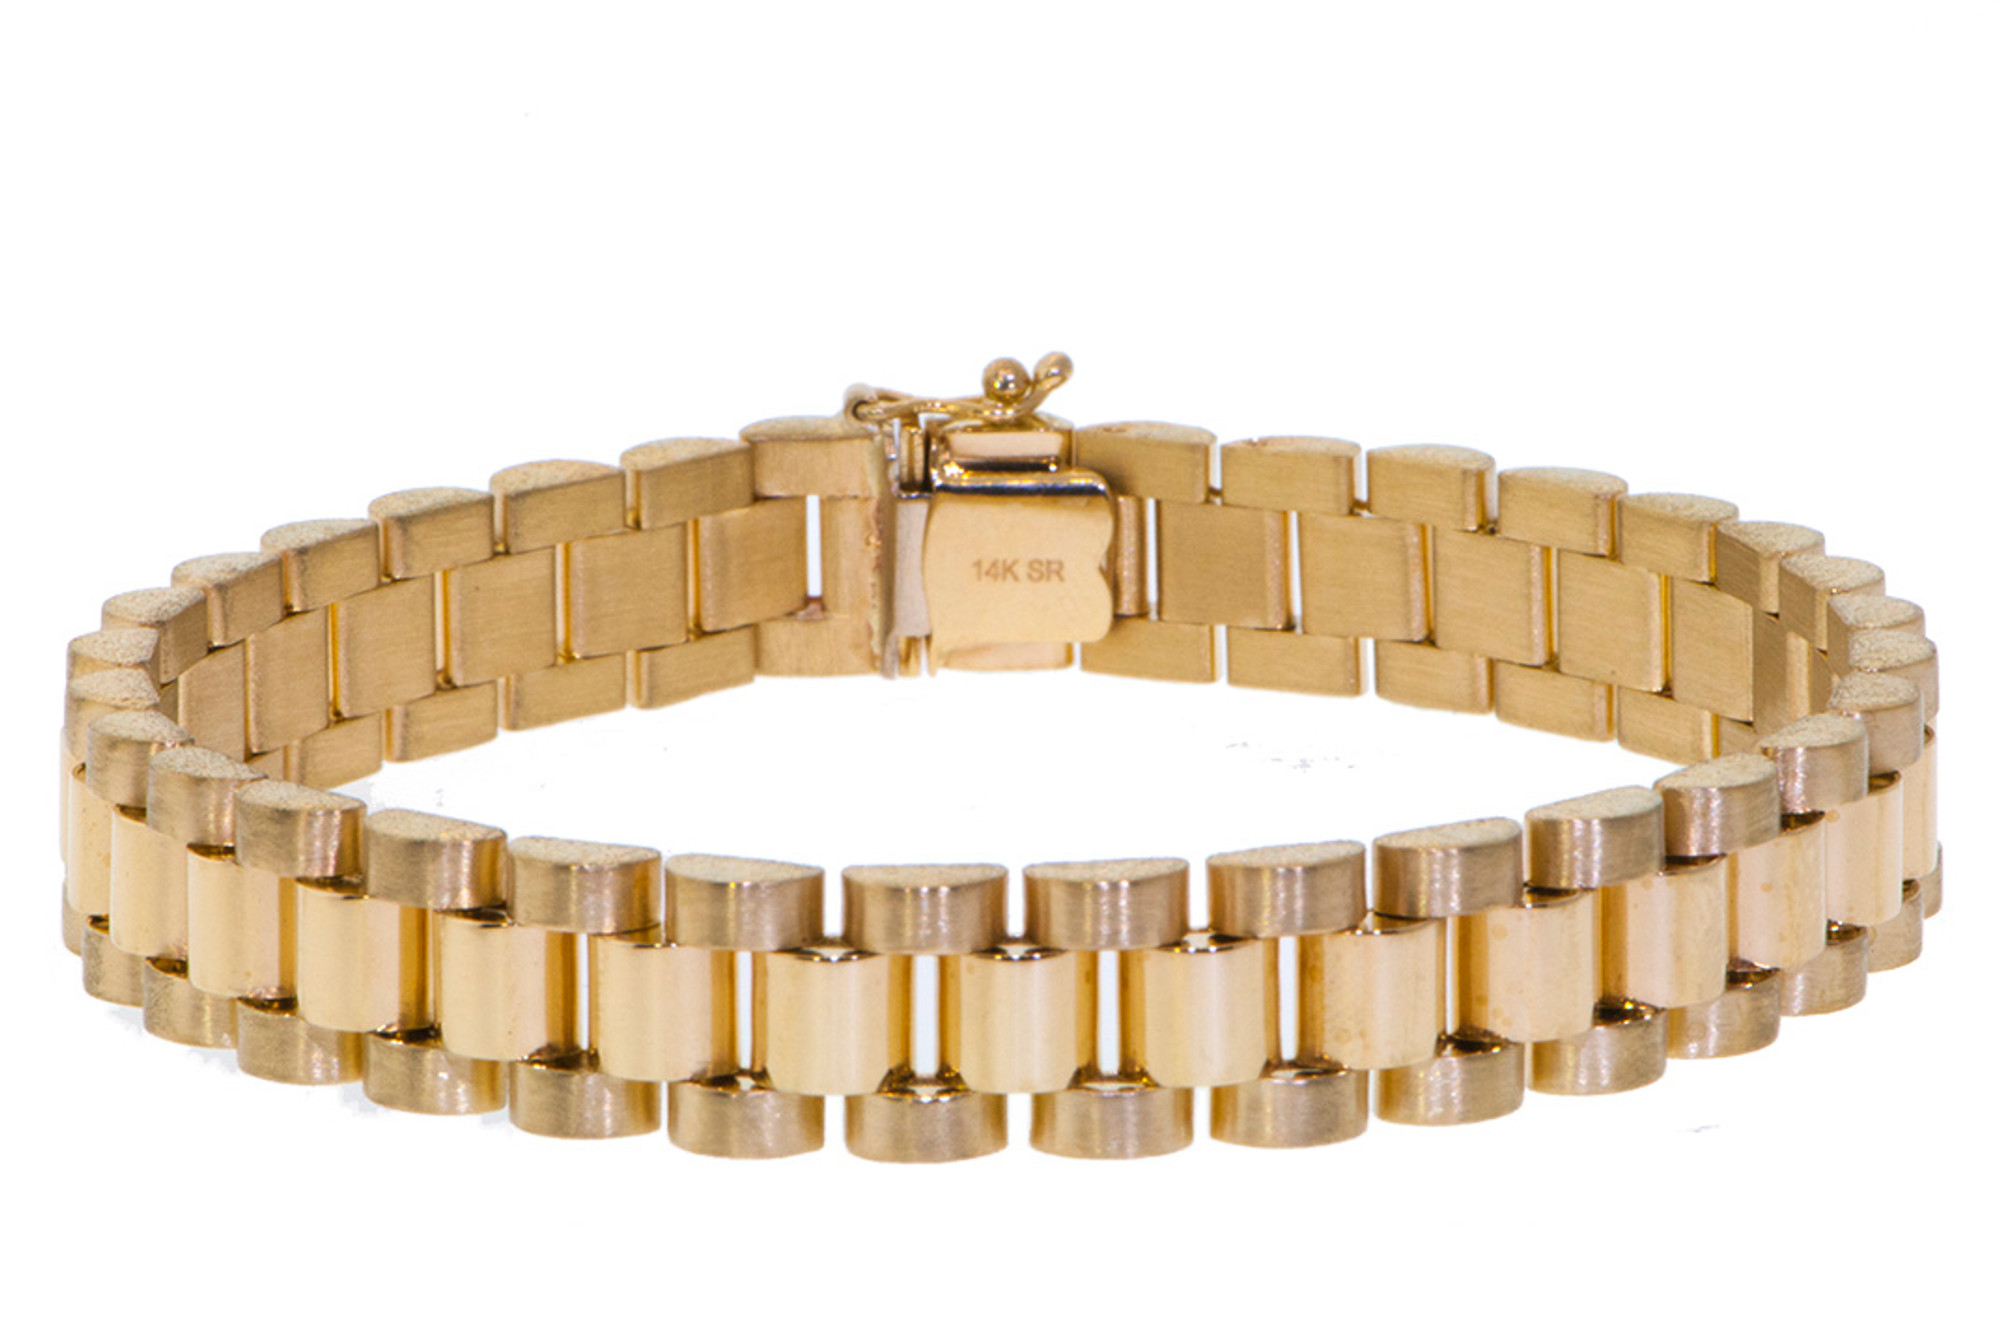 LOT:221 | (917003840) An 18k gold link gentleman's Rolex President bracelet.